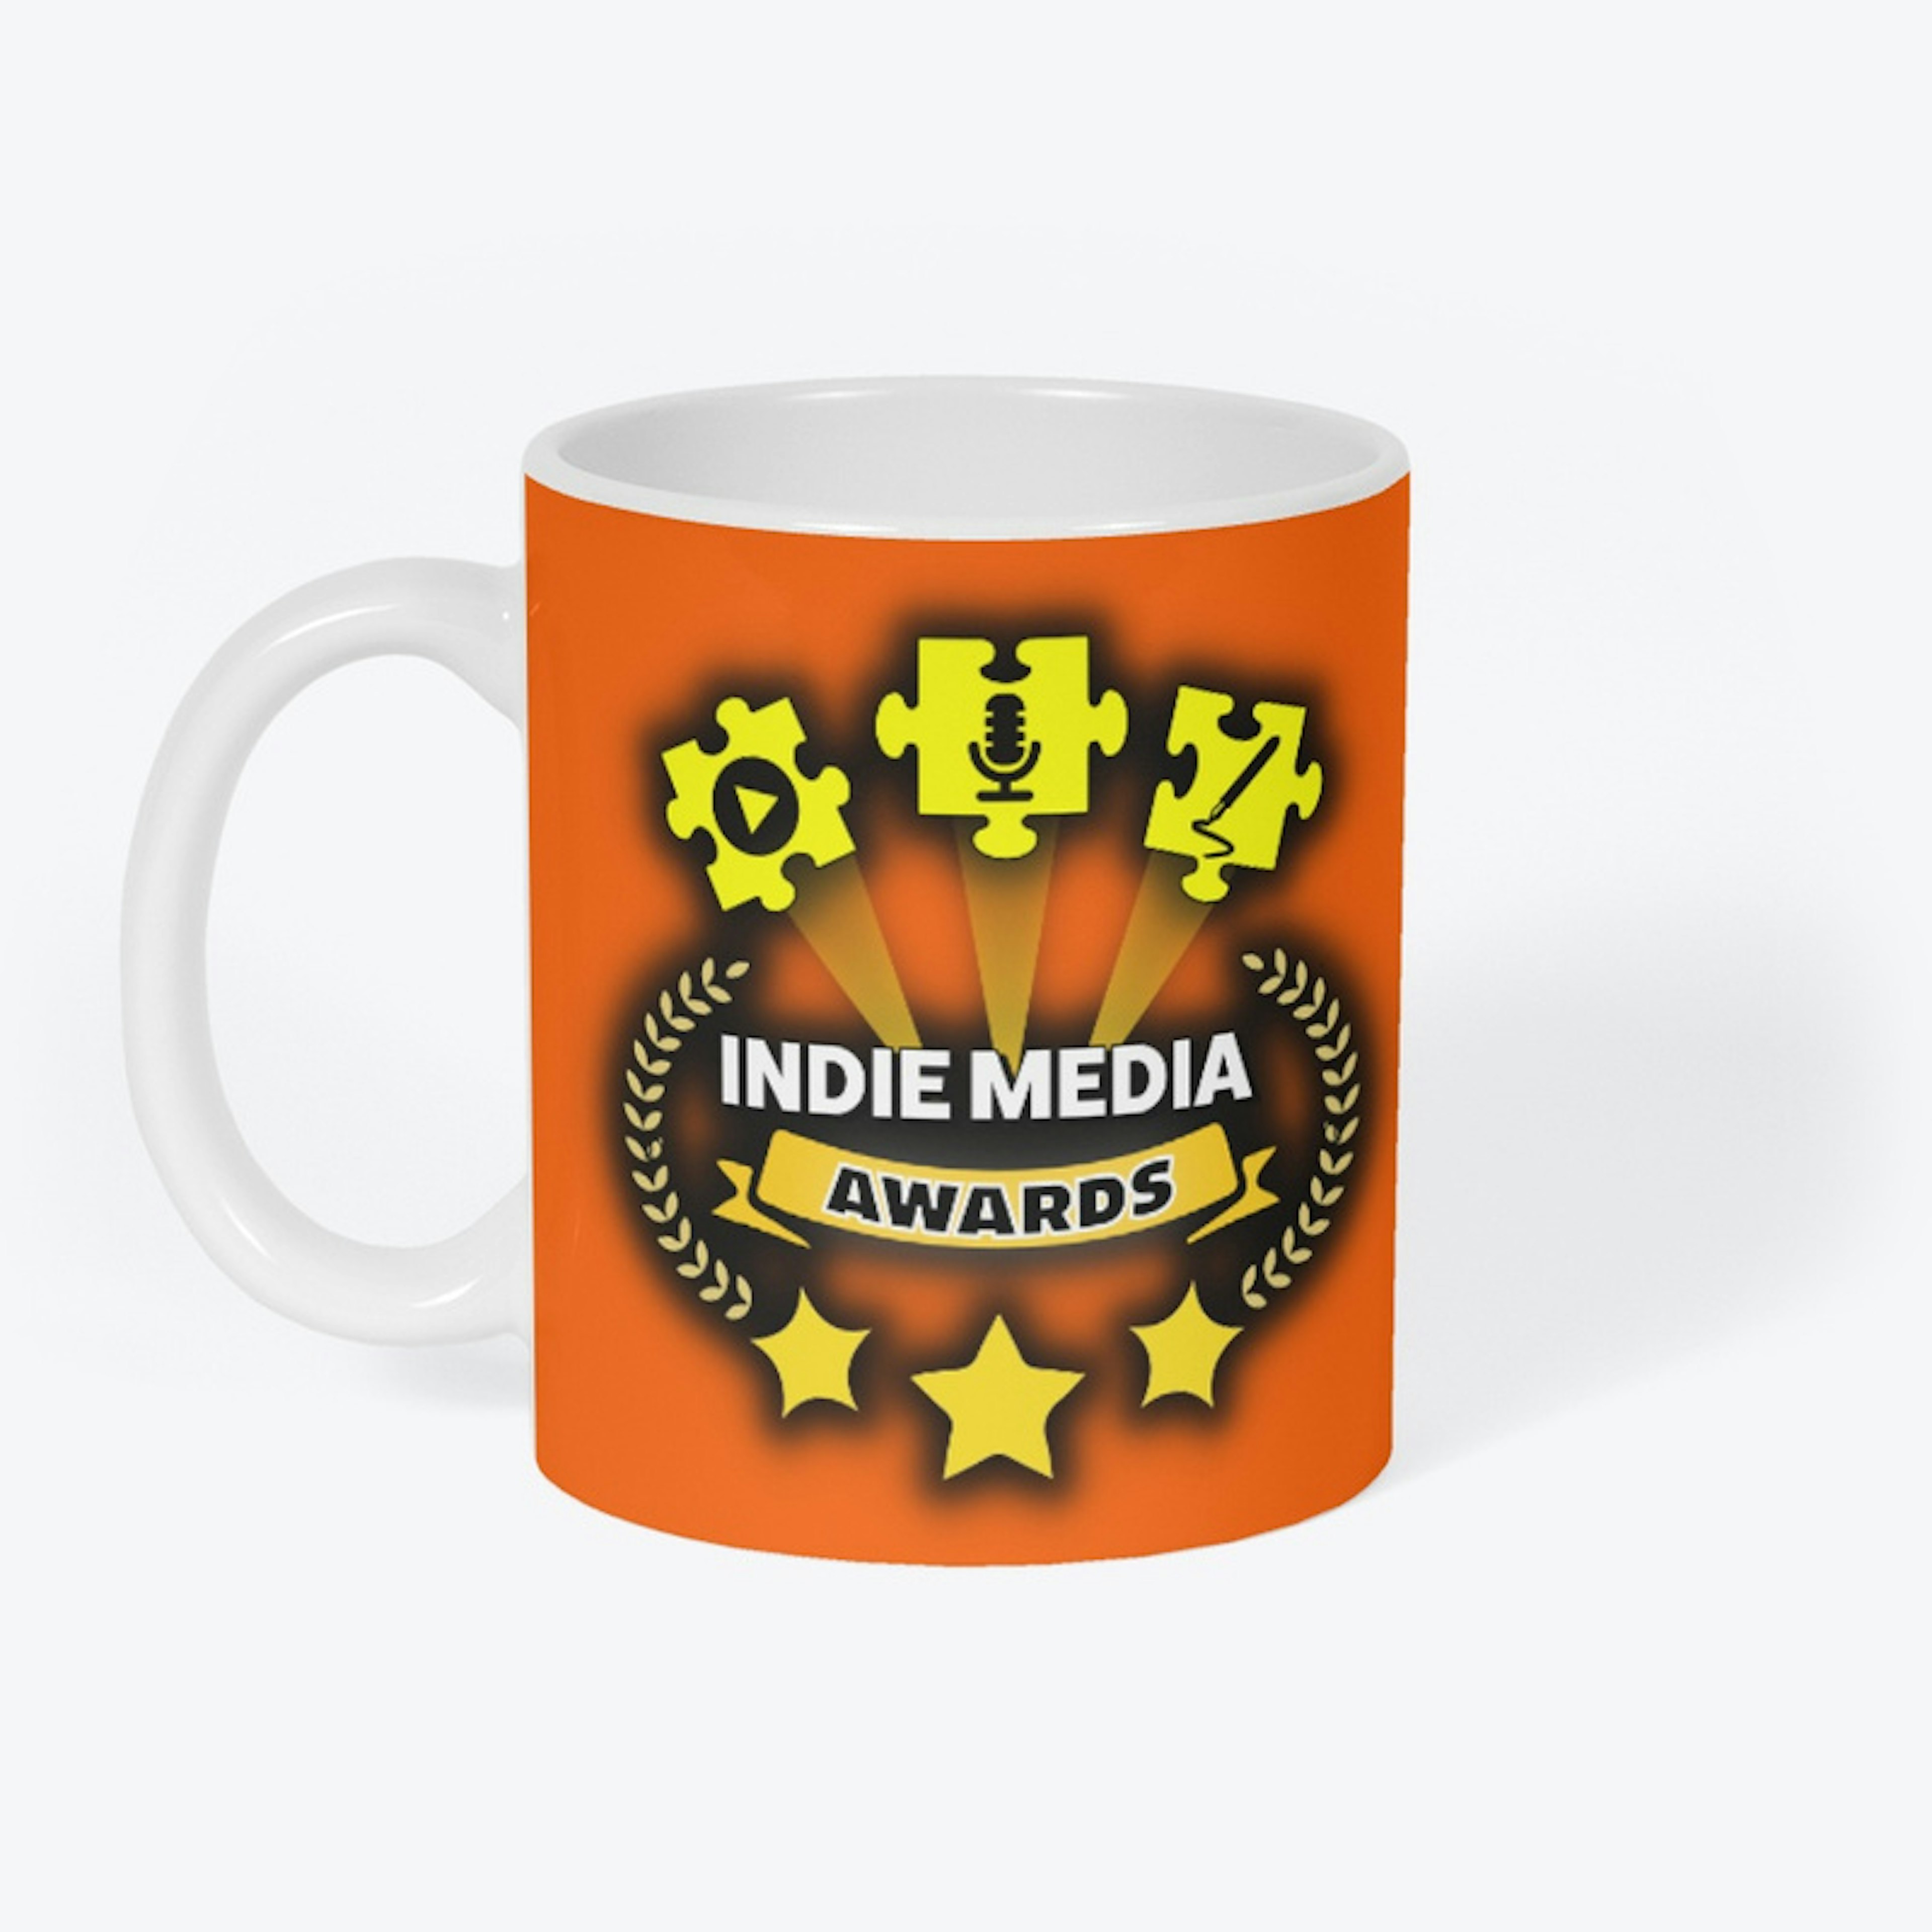 Indie Media Awards